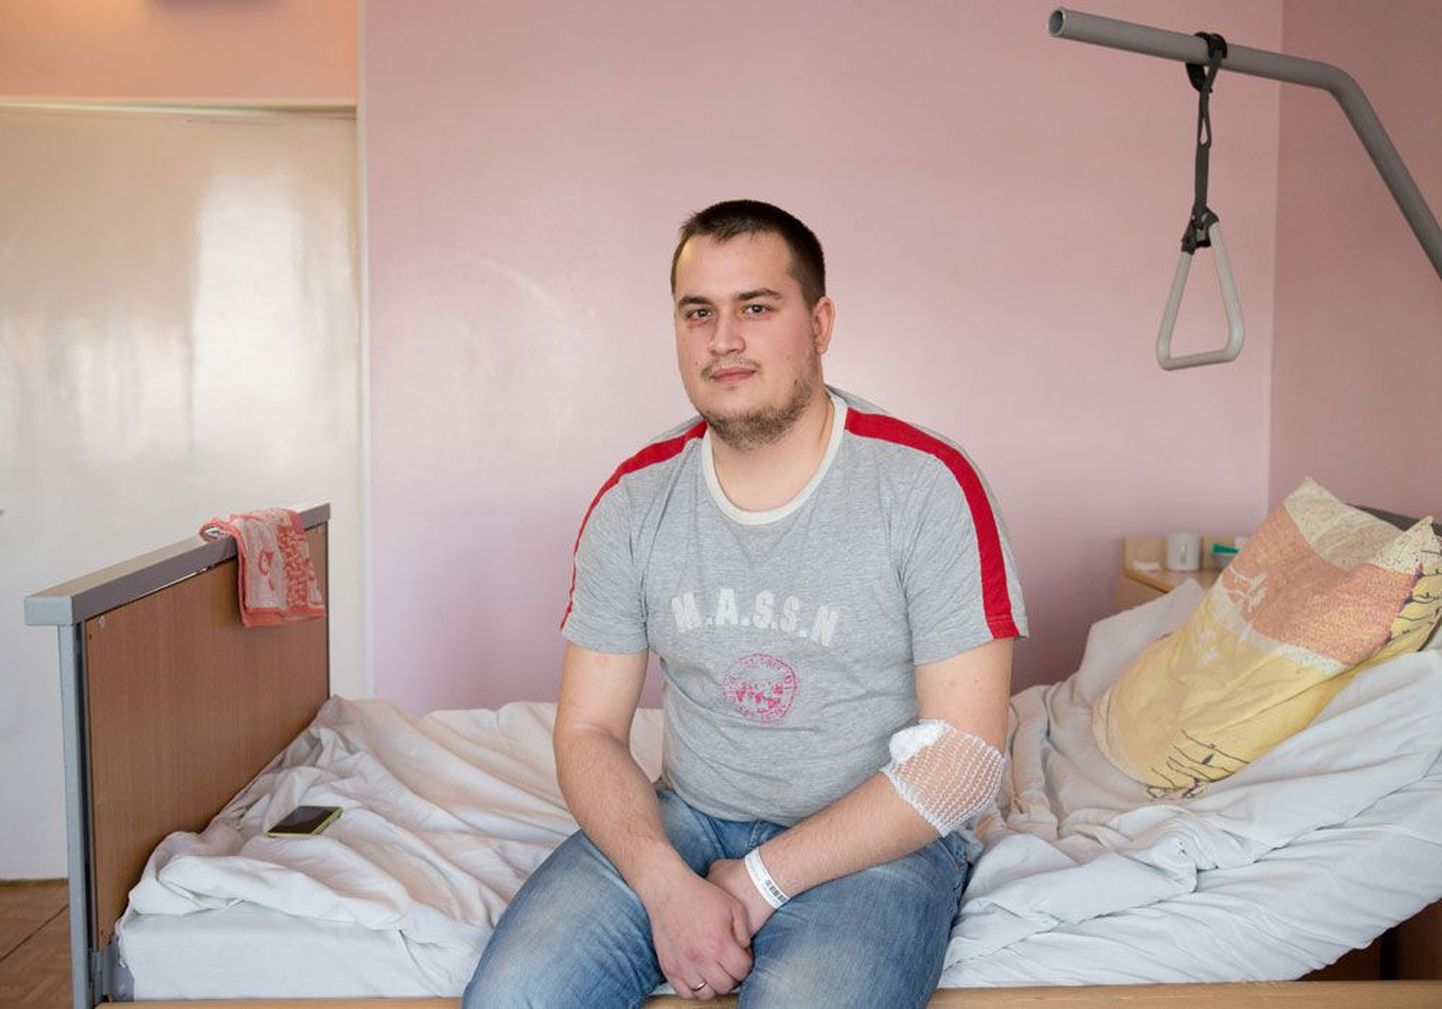 Сергей, сварщик  Eesti Energia Tehnoloogiatööstus, в ближайшие дни планирует попасть из больницы домой.